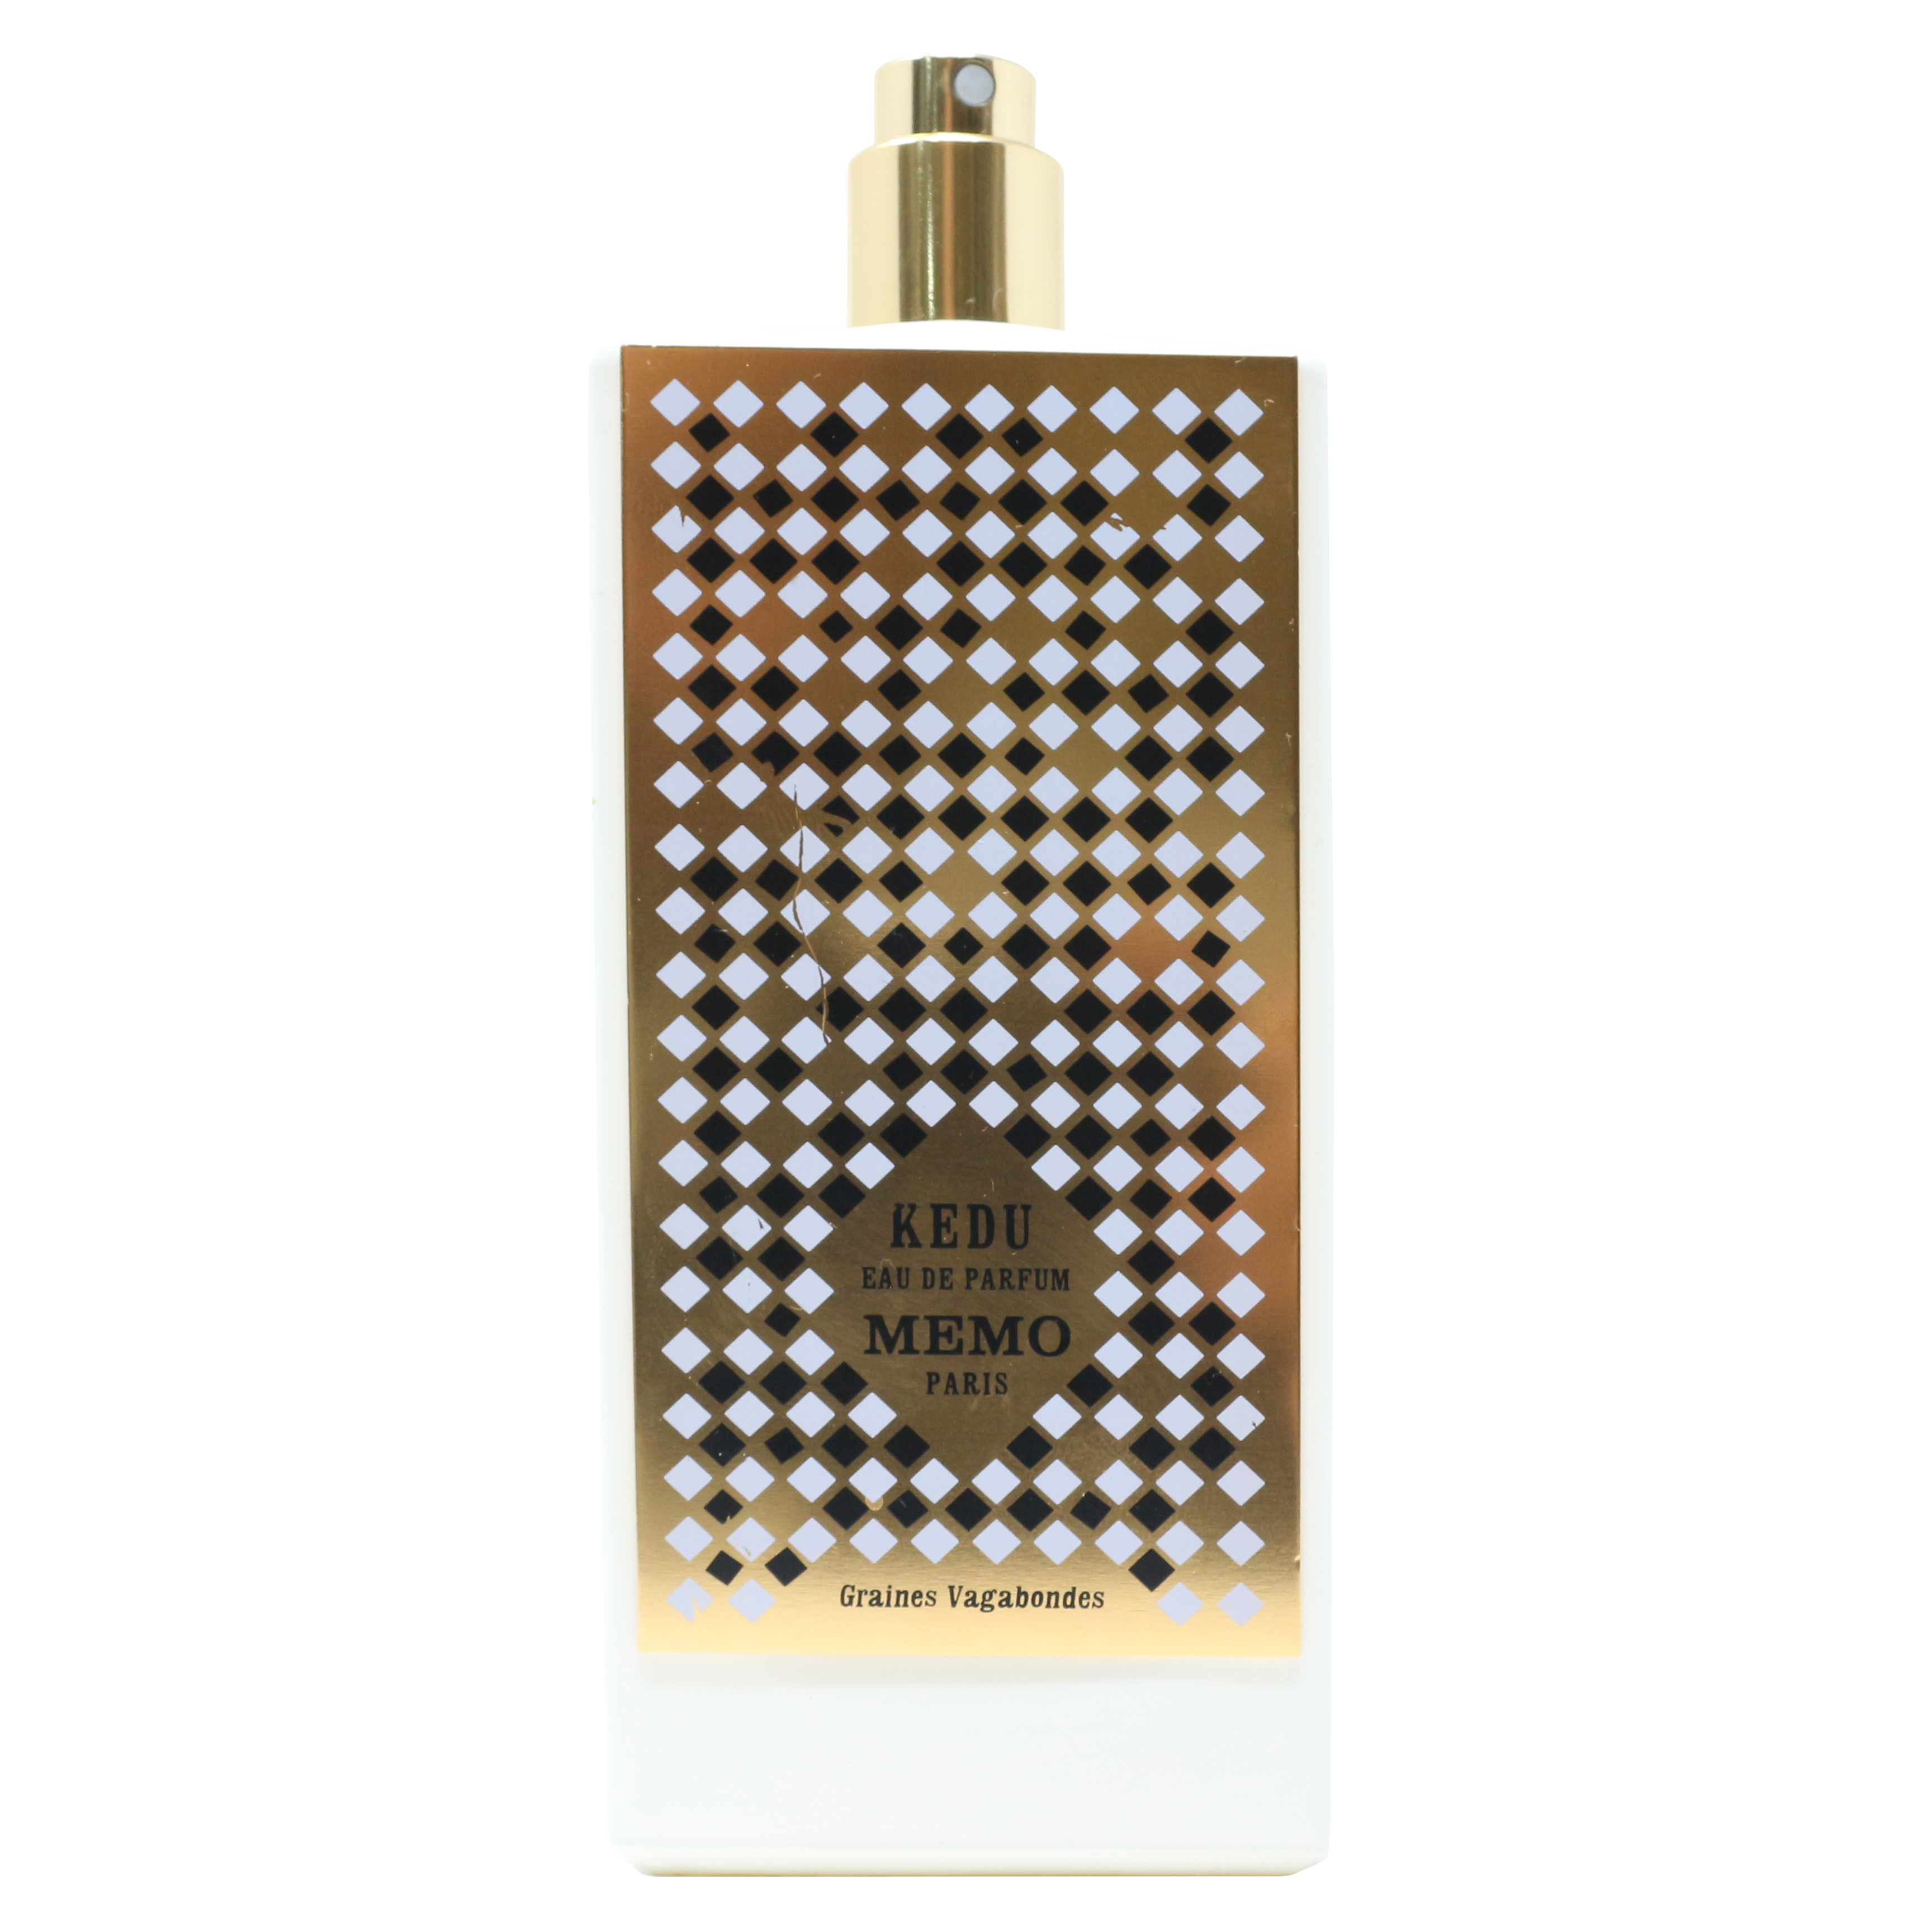 Memo Paris Kedu Eau De Parfum Spray 2.5oz/75ml New,as ...